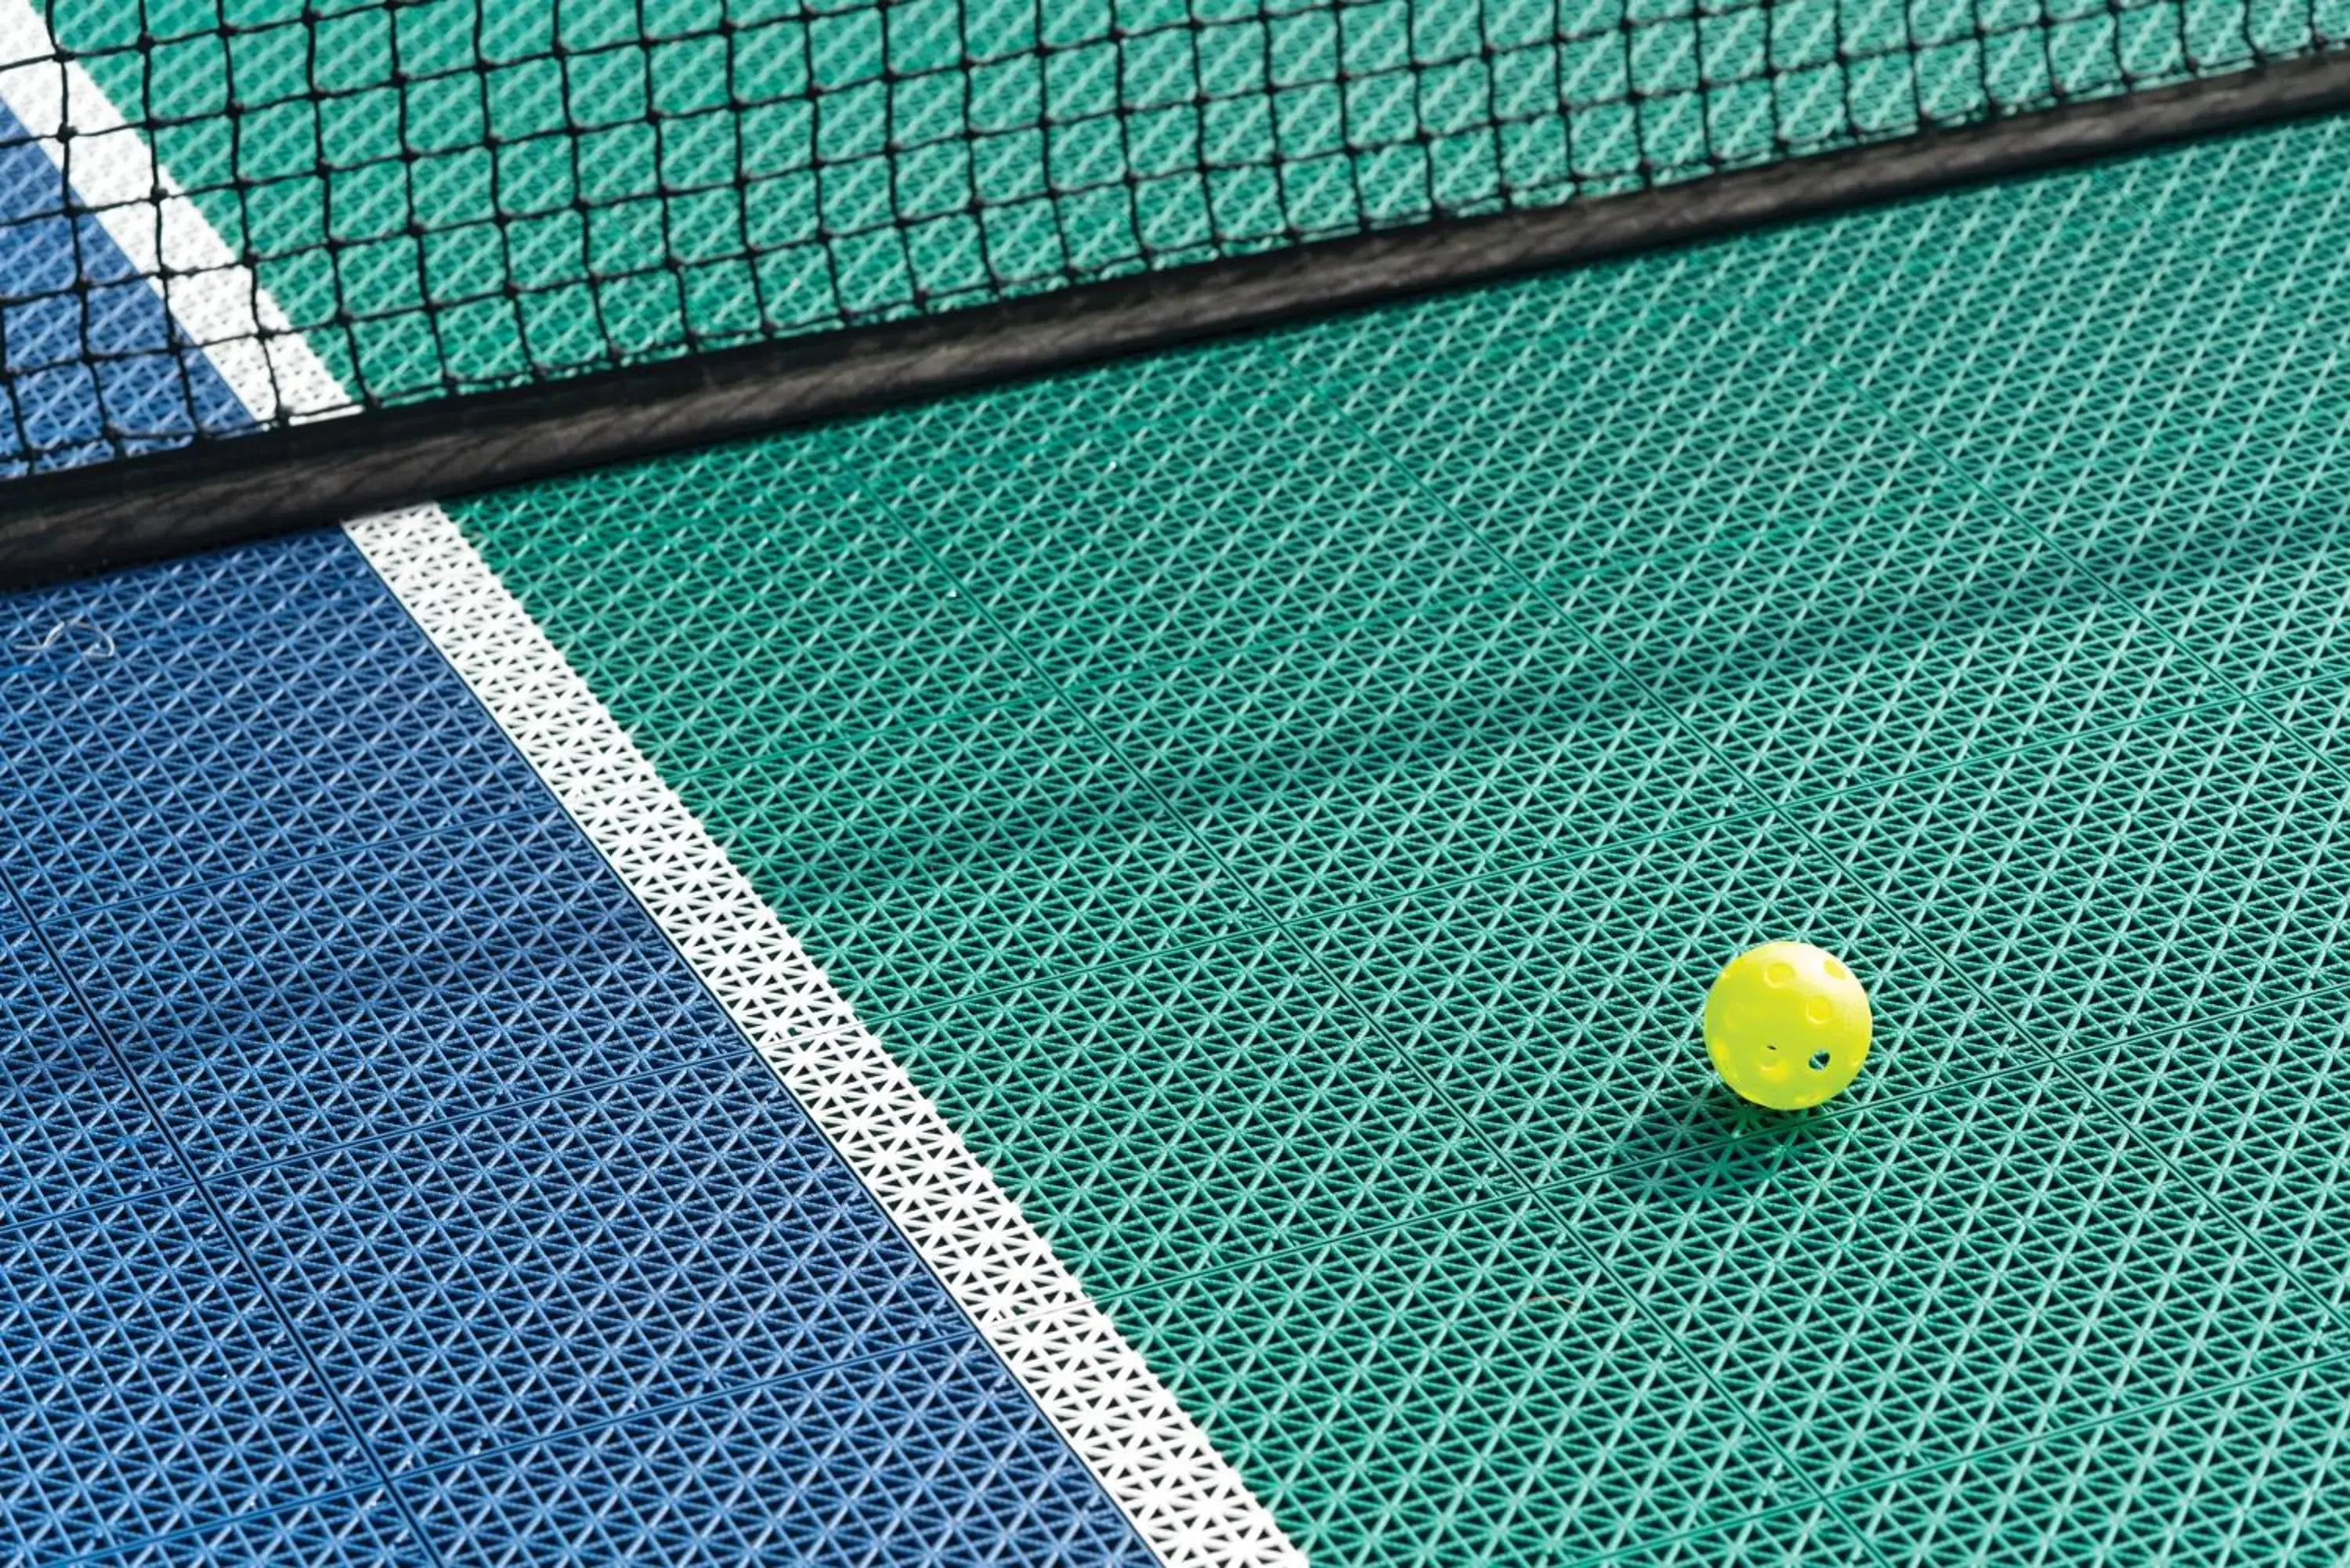 Tennis court, Other Activities in Kona Coast Resort